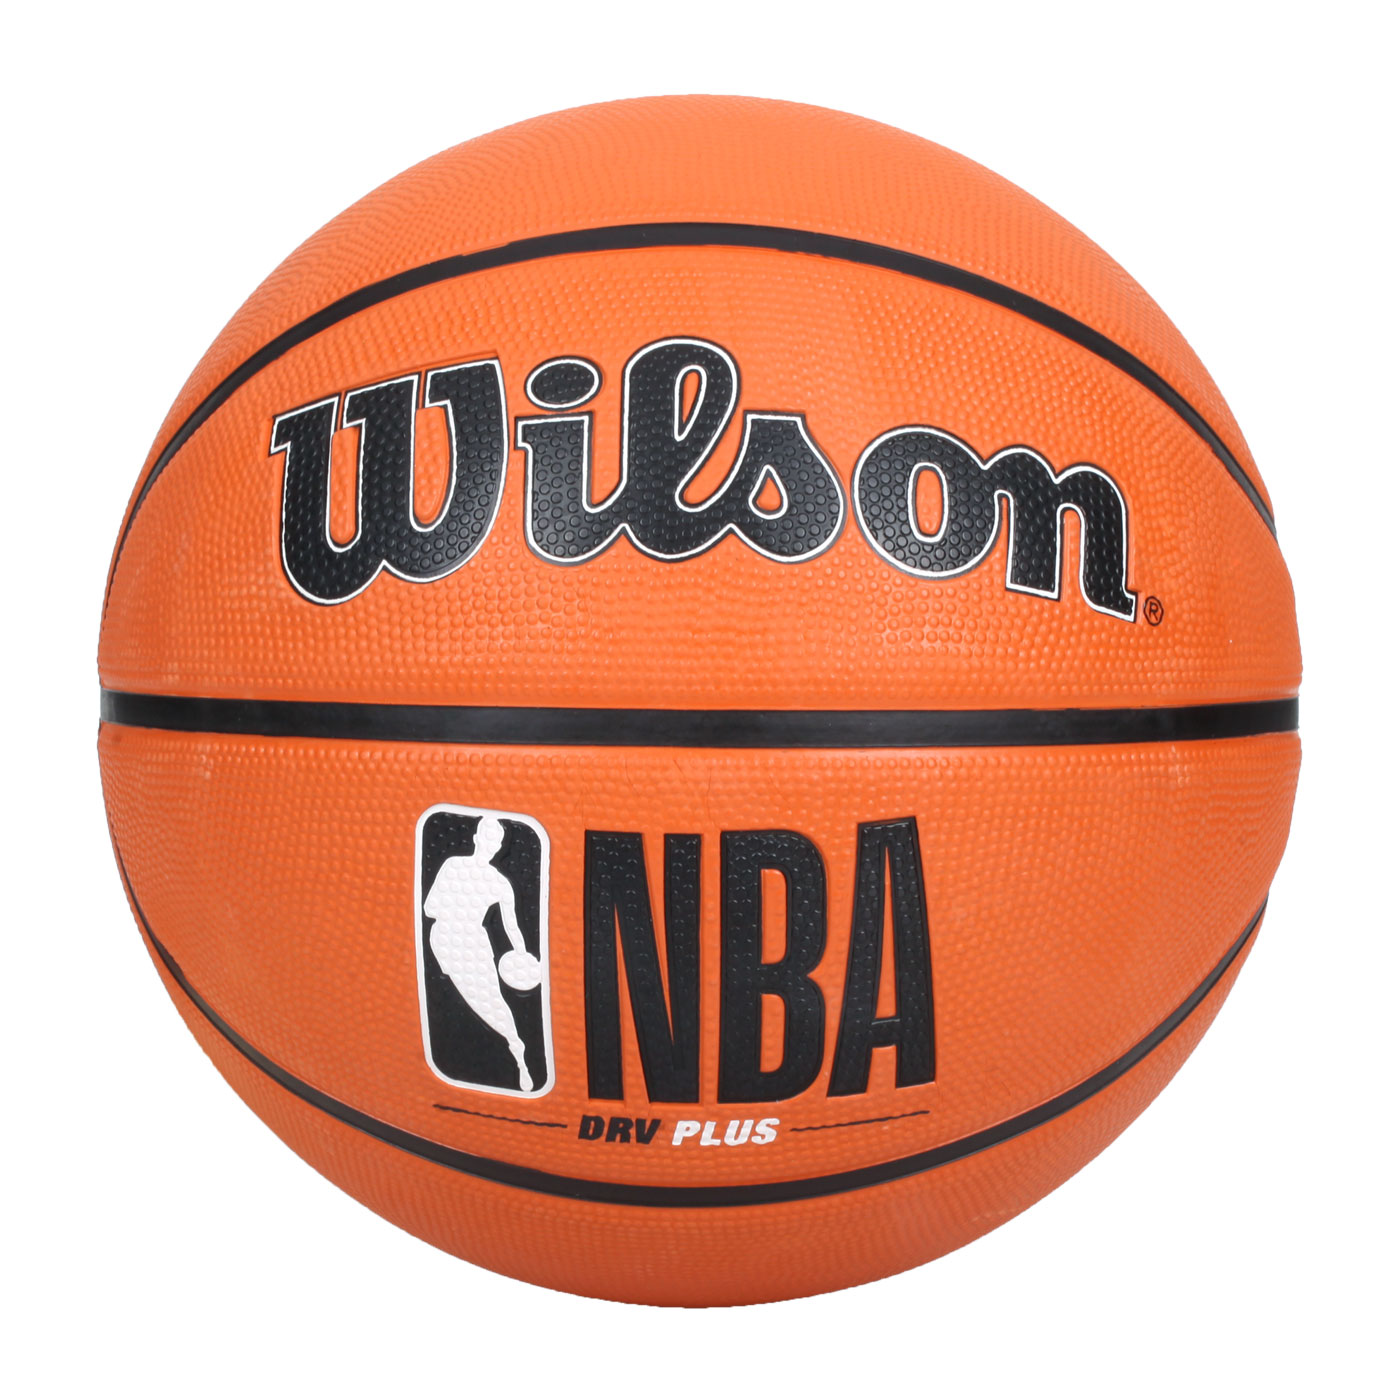 WILSON NBA DRV系列 PLUS橡膠籃球#7 WTB9200XB07